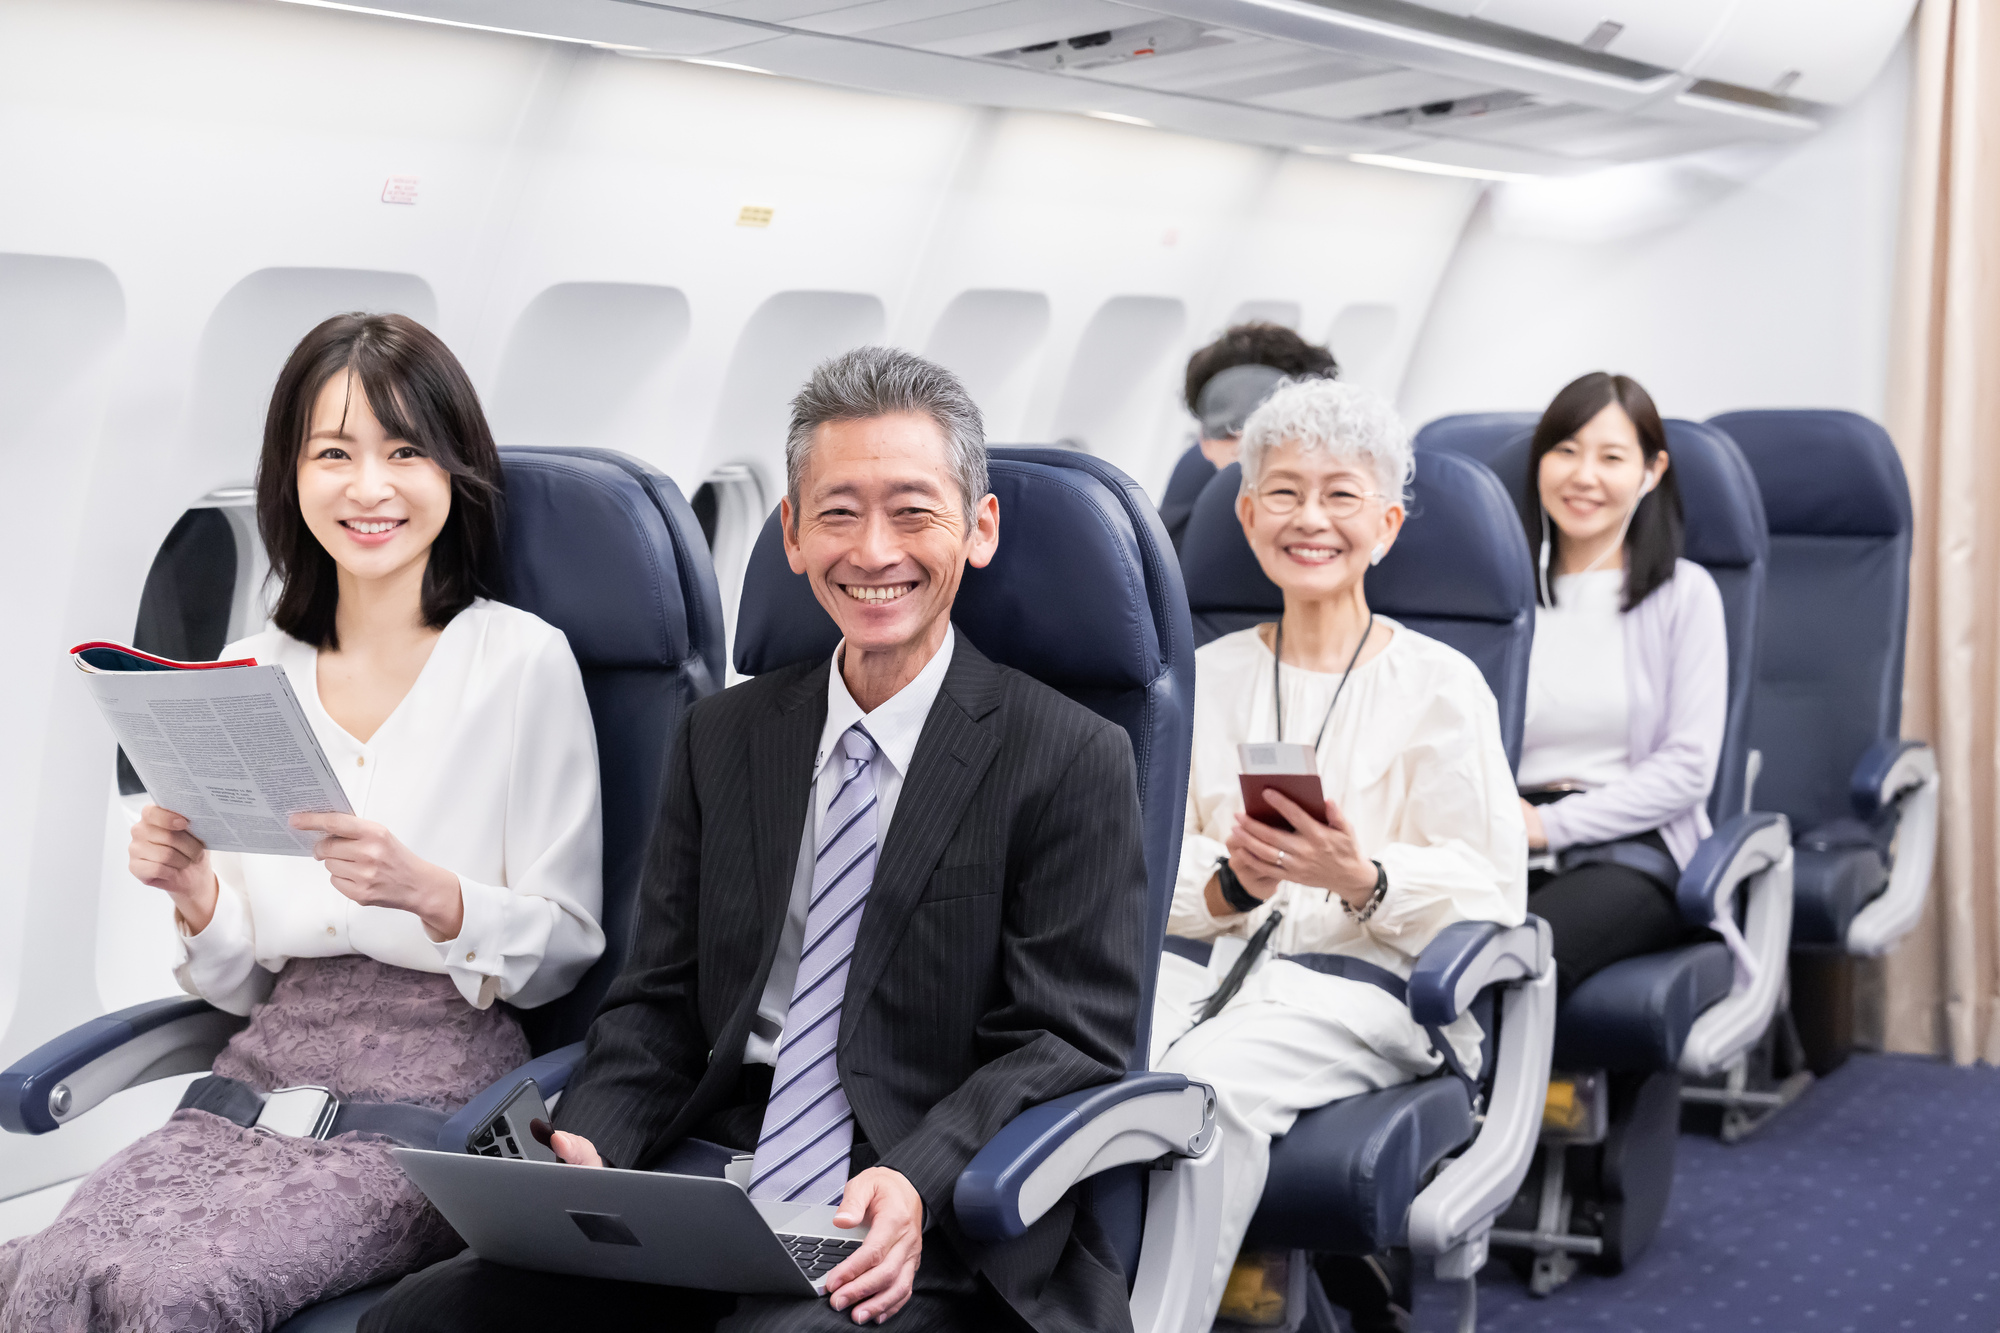 笑顔で飛行機に乗る人達のイメージ